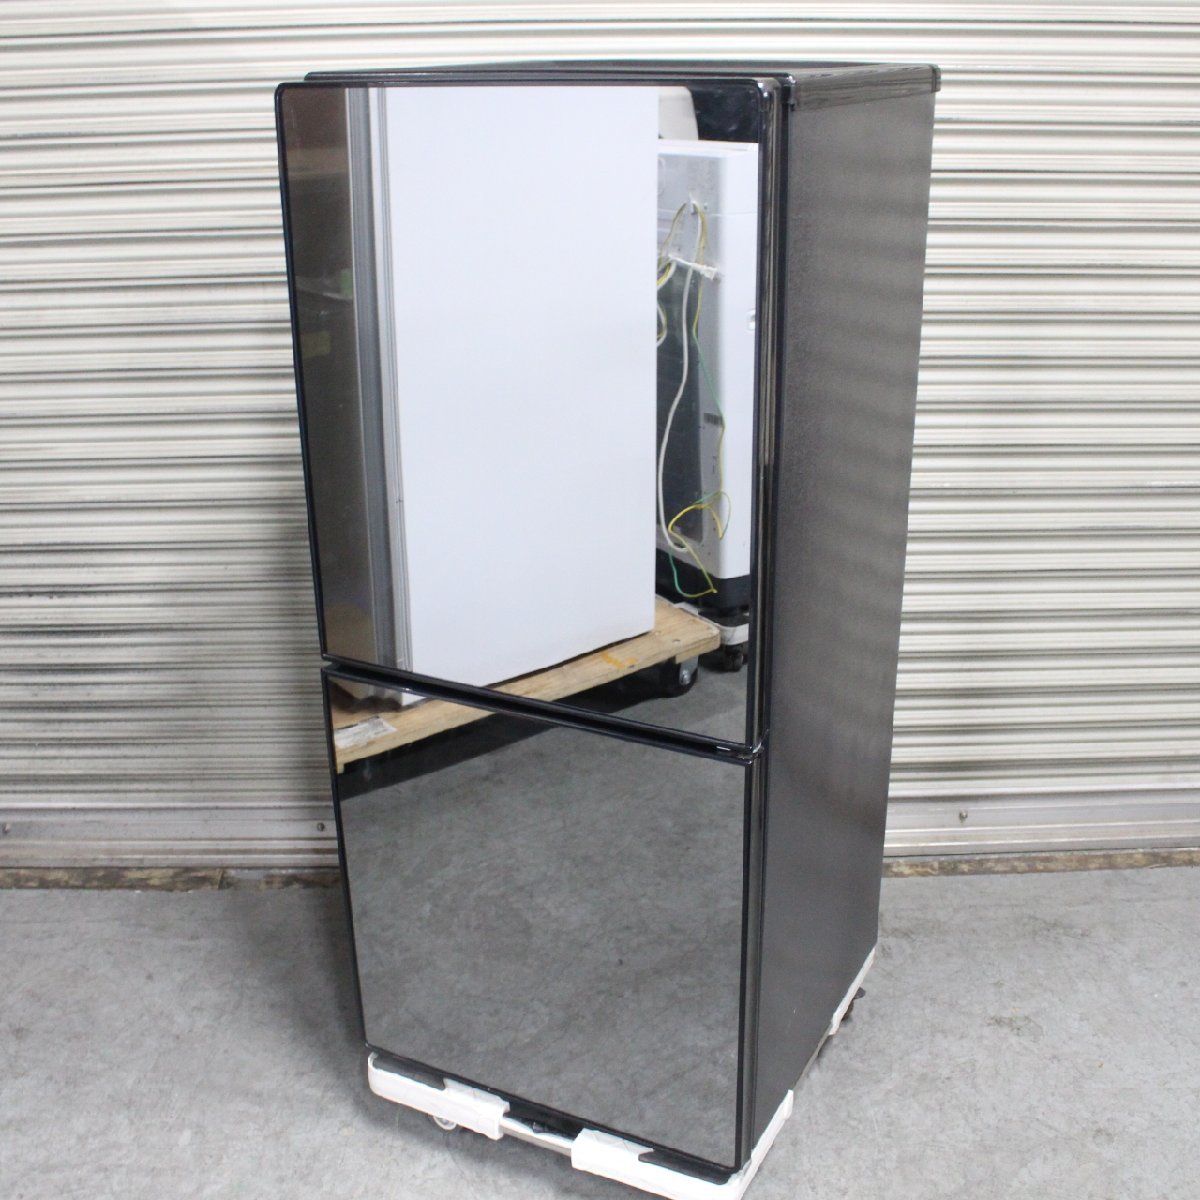 川崎市中原区にて ツインバード 冷凍冷蔵庫 HR-EJ11B 2020年製 を出張買取させて頂きました。